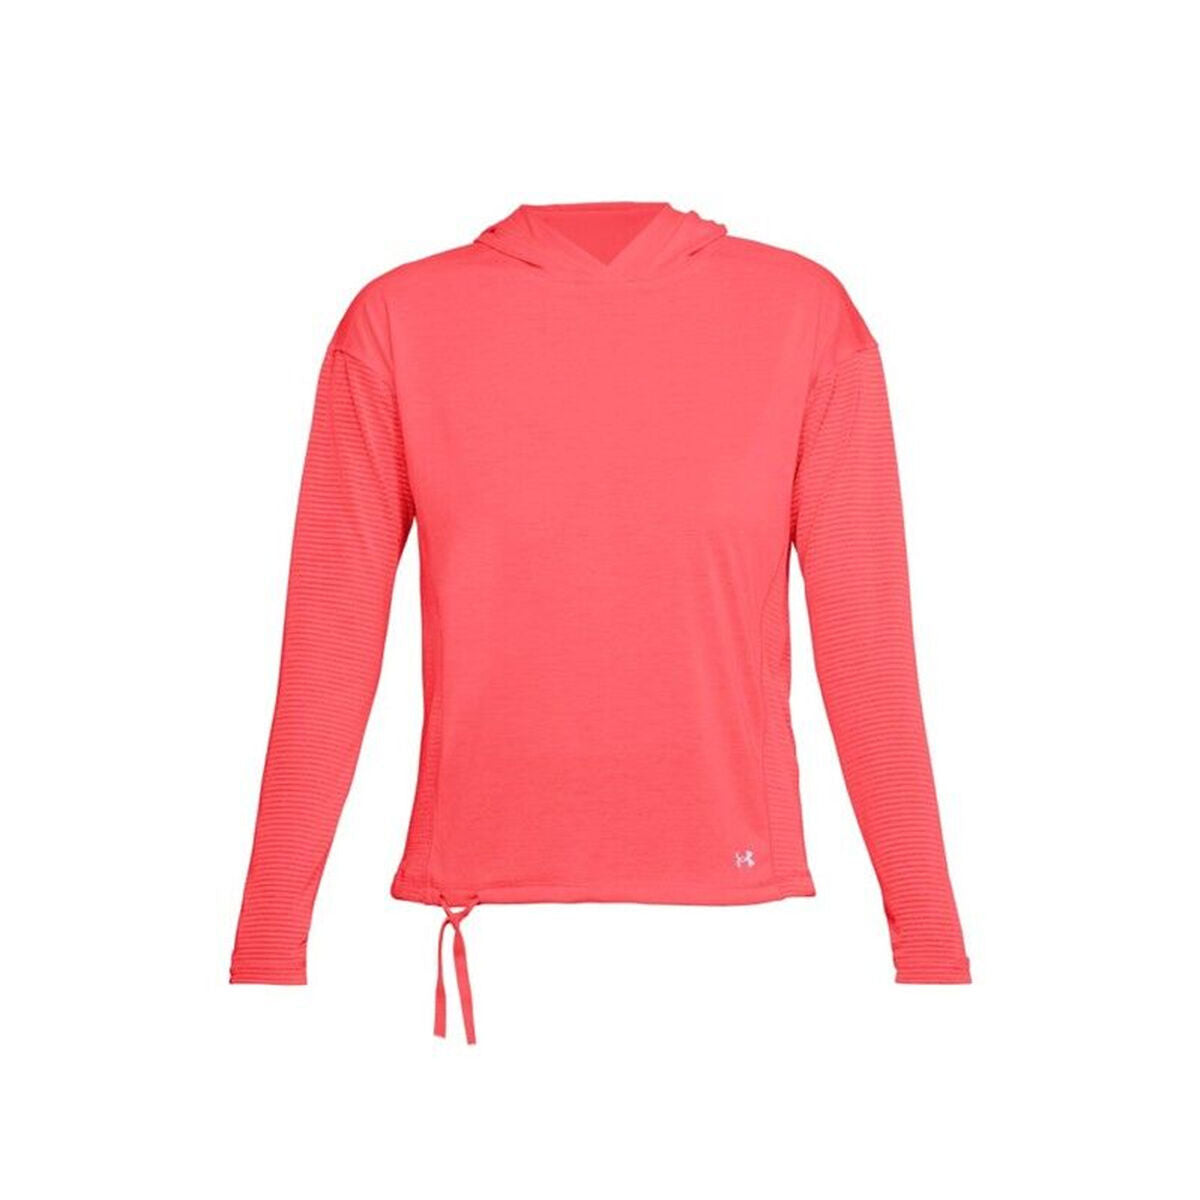 Women's long sleeve T-shirt Under Armour 1320799-819 Pink